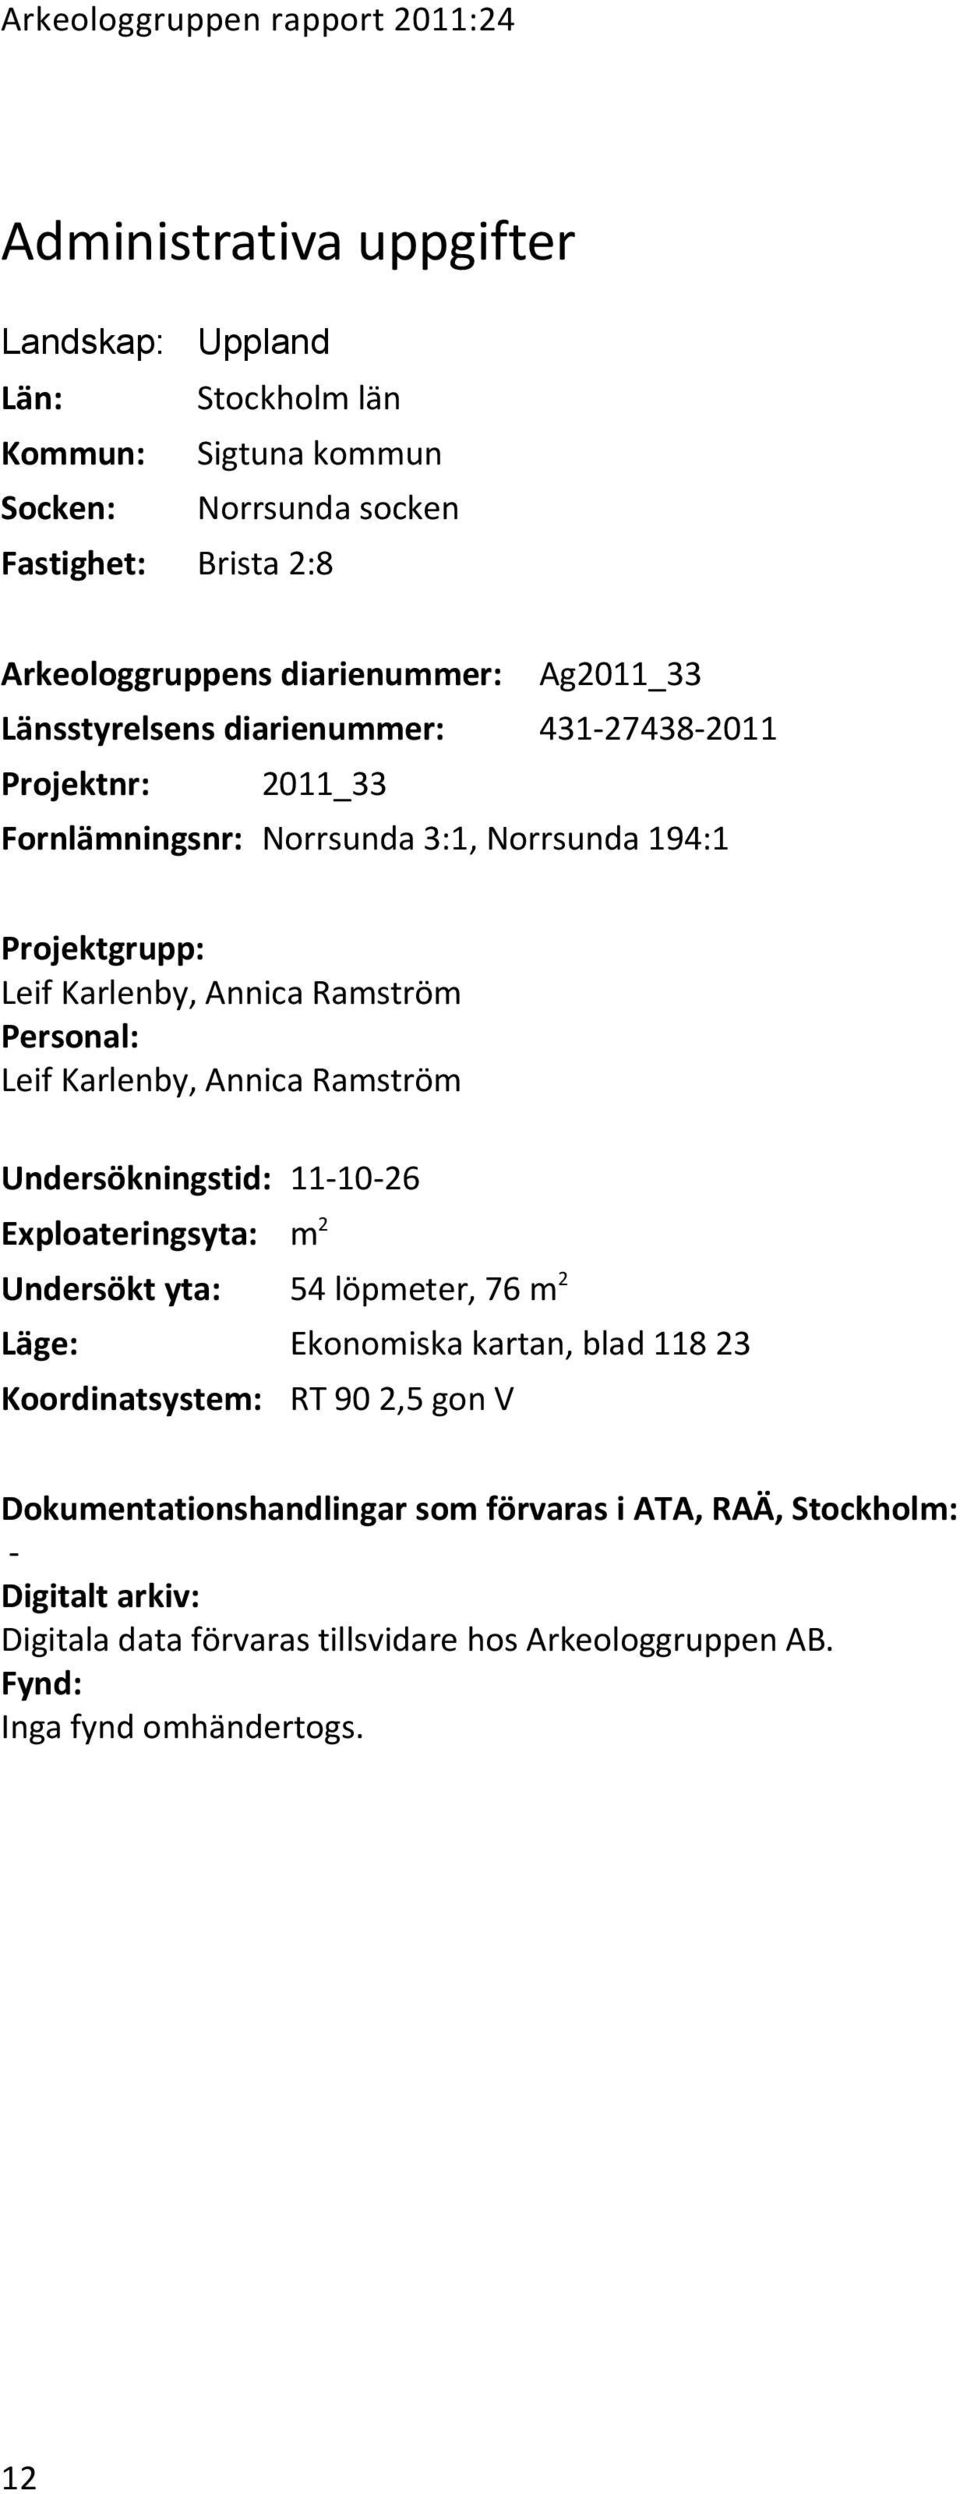 Personal: Leif Karlenby, Annica Ramström Undersökningstid: 11-10-26 Exploateringsyta: m2 Undersökt yta: 54 löpmeter, 76 m2 Läge: Ekonomiska kartan, blad 118 23 Koordinatsystem: RT